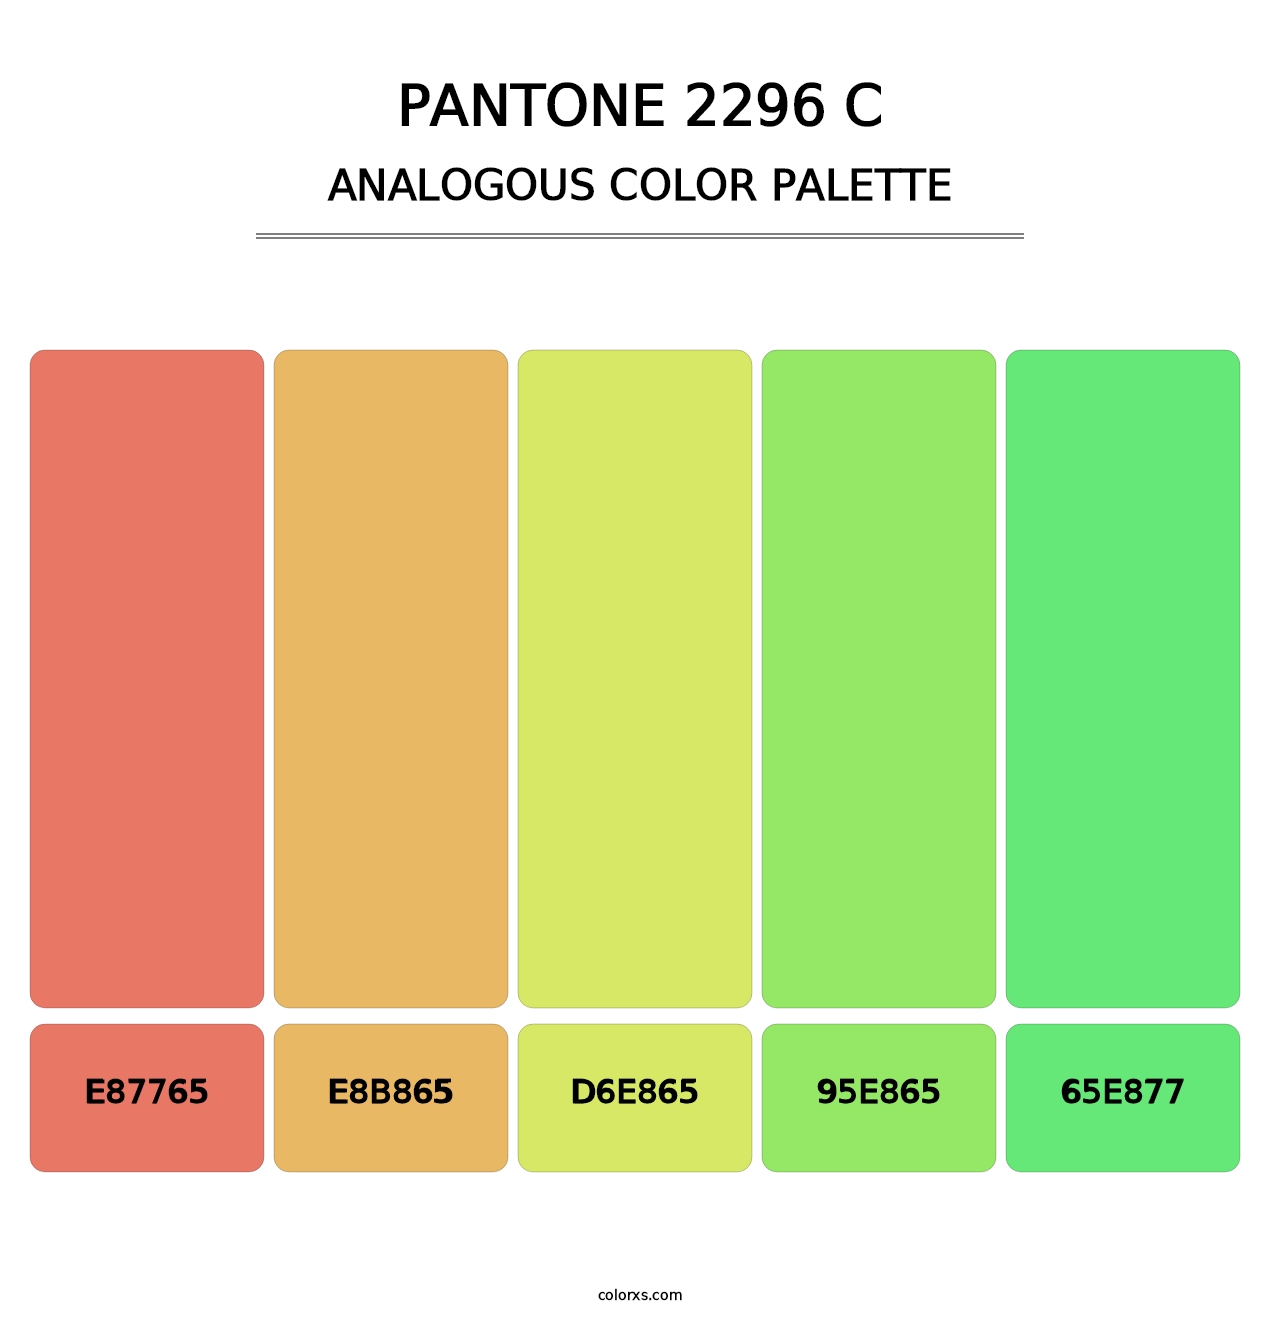 PANTONE 2296 C - Analogous Color Palette